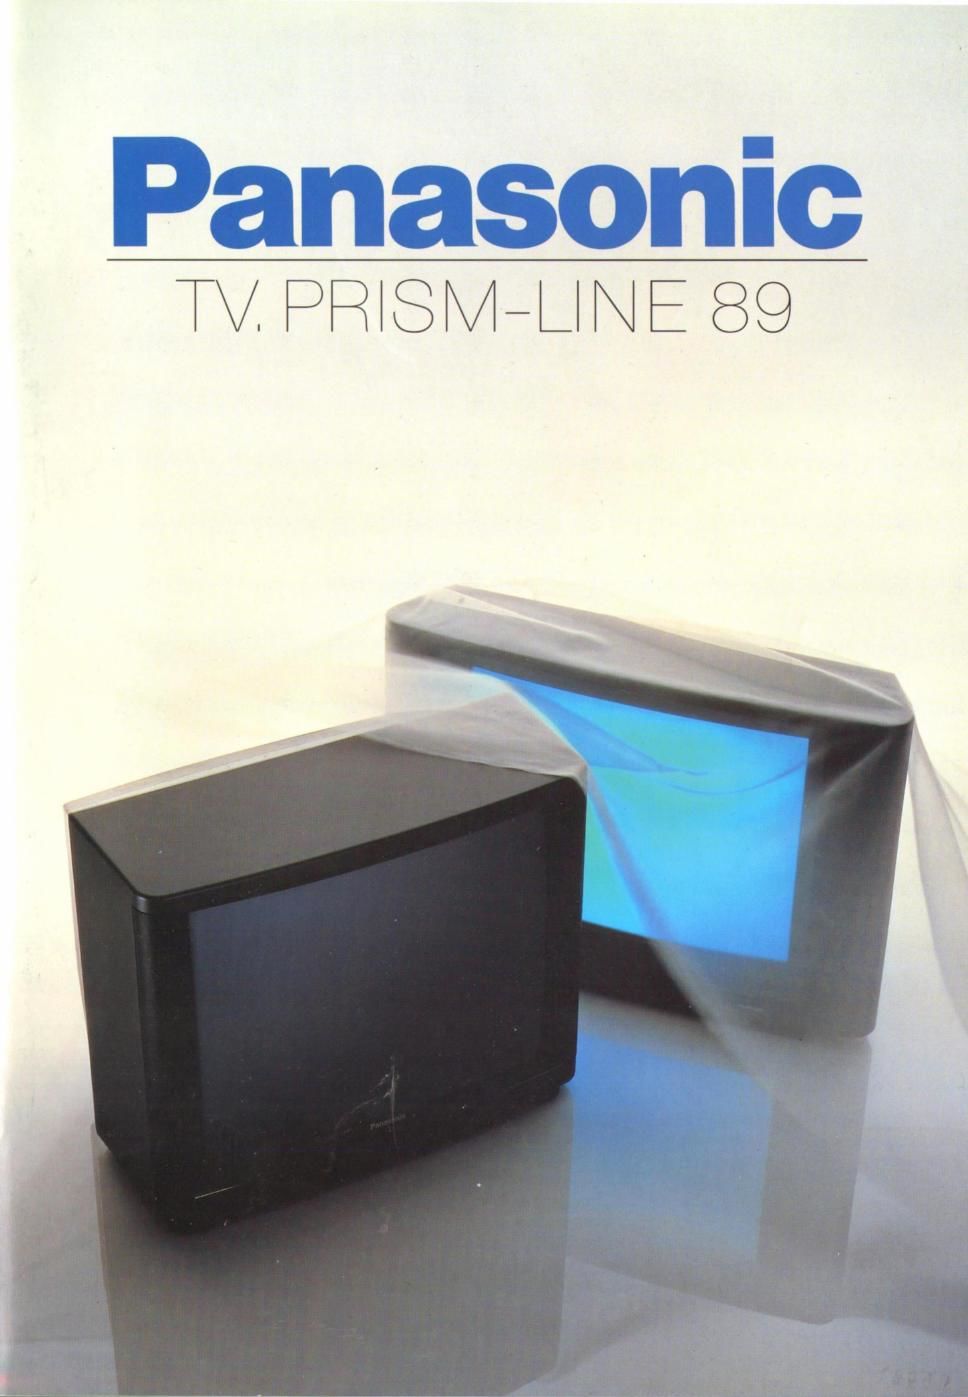 panasonic catalogs 1998 panasonic prismline